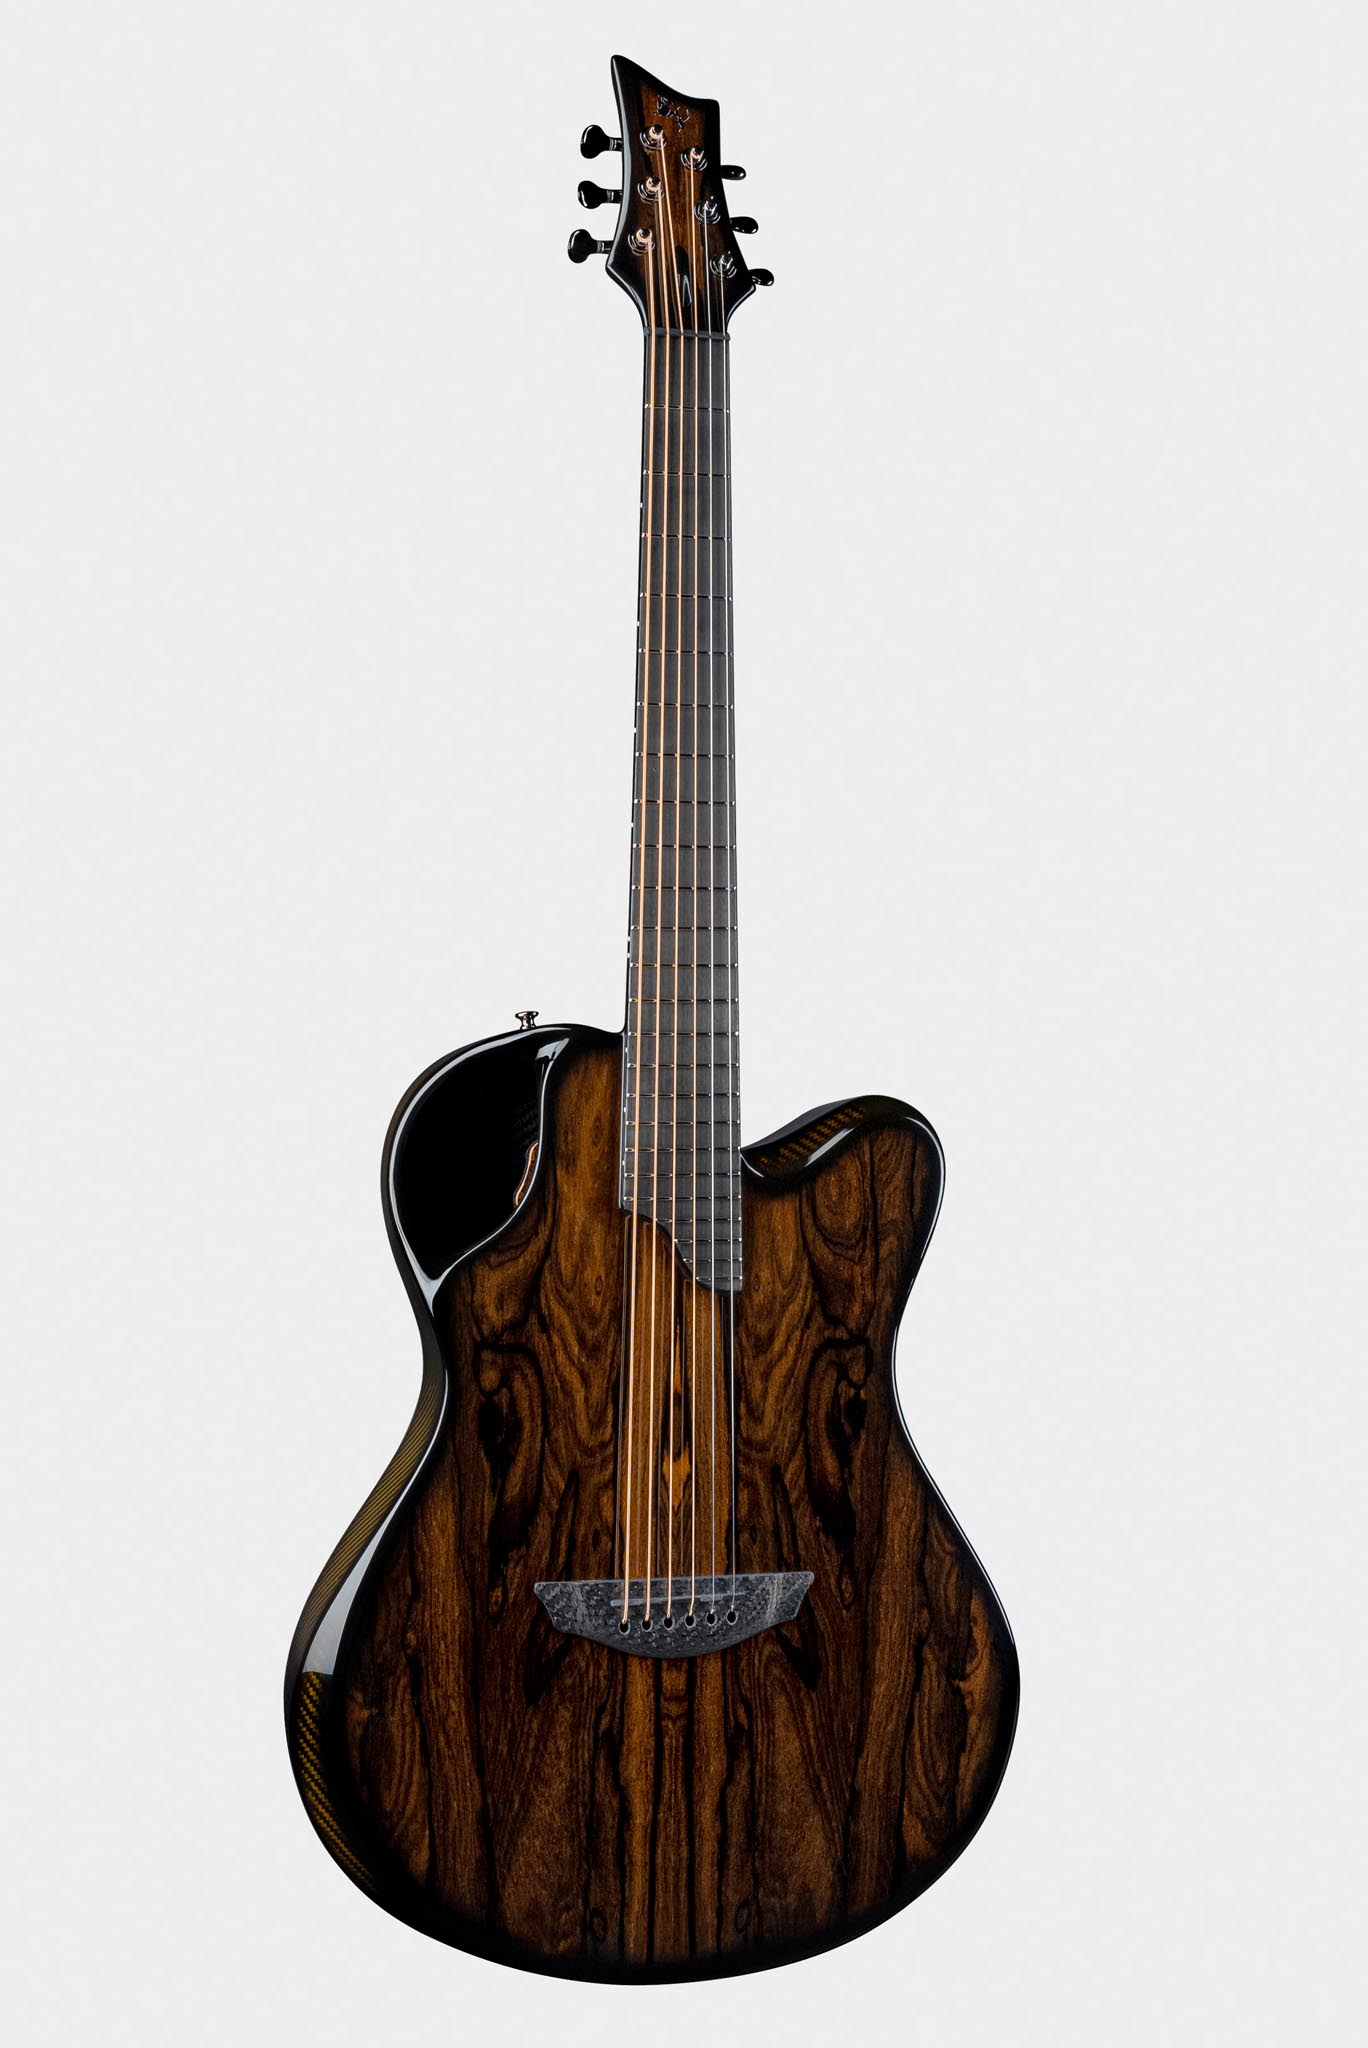 Emerald X20 Ziricote Guitar with Dark Finish